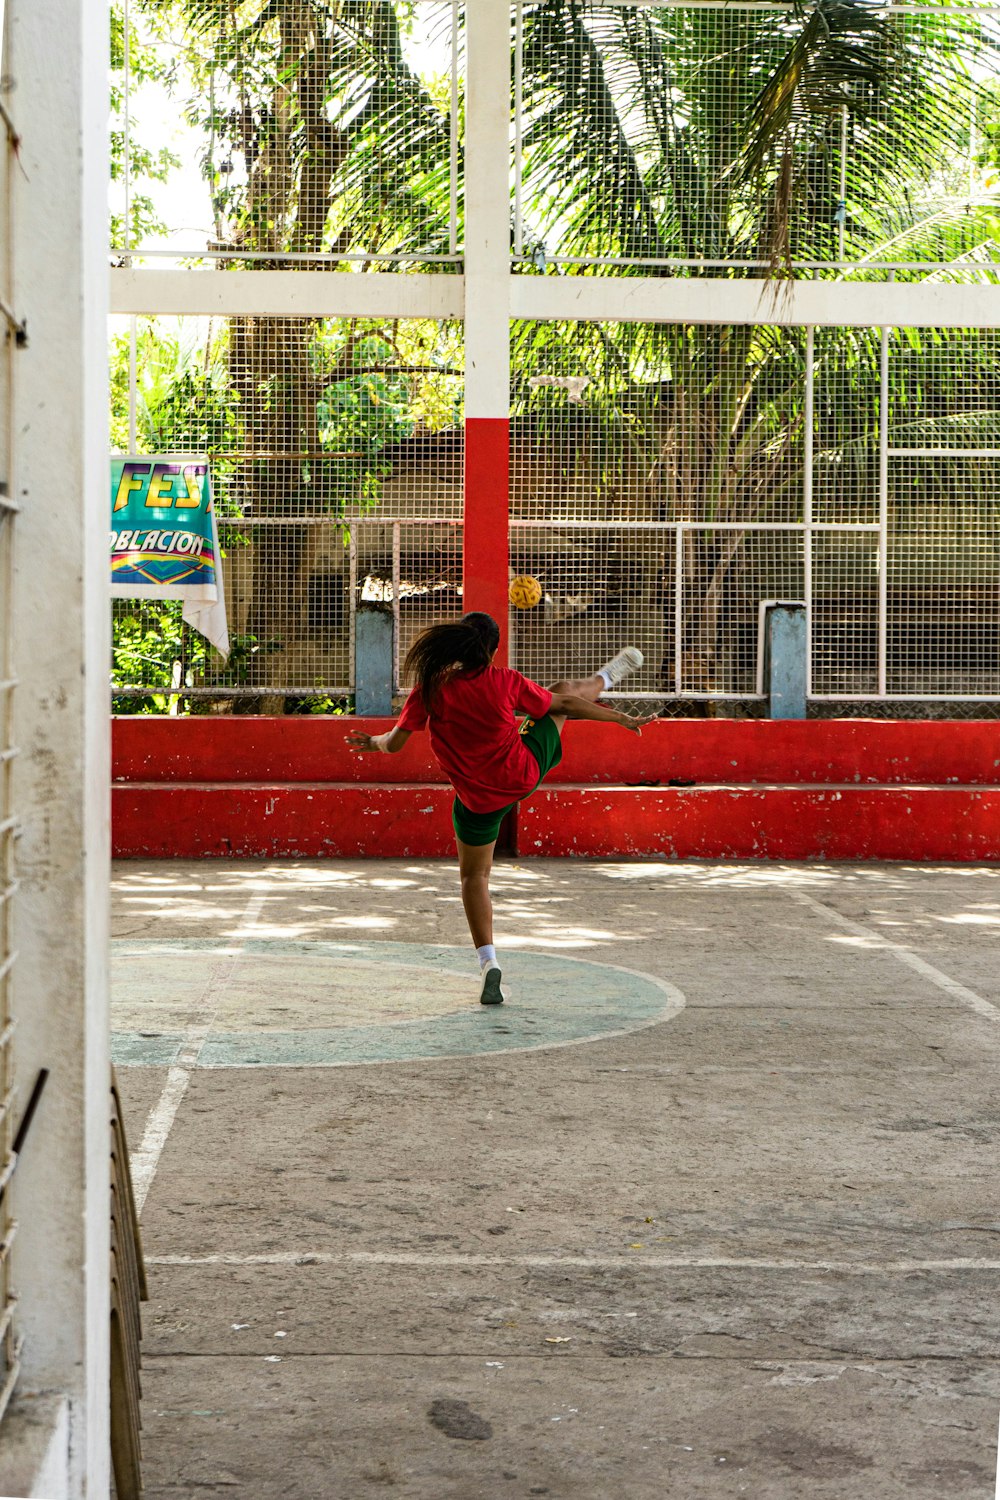 빨간 셔츠와 검은 반바지를 입은 남자가 낮에 농구를 하고 있다